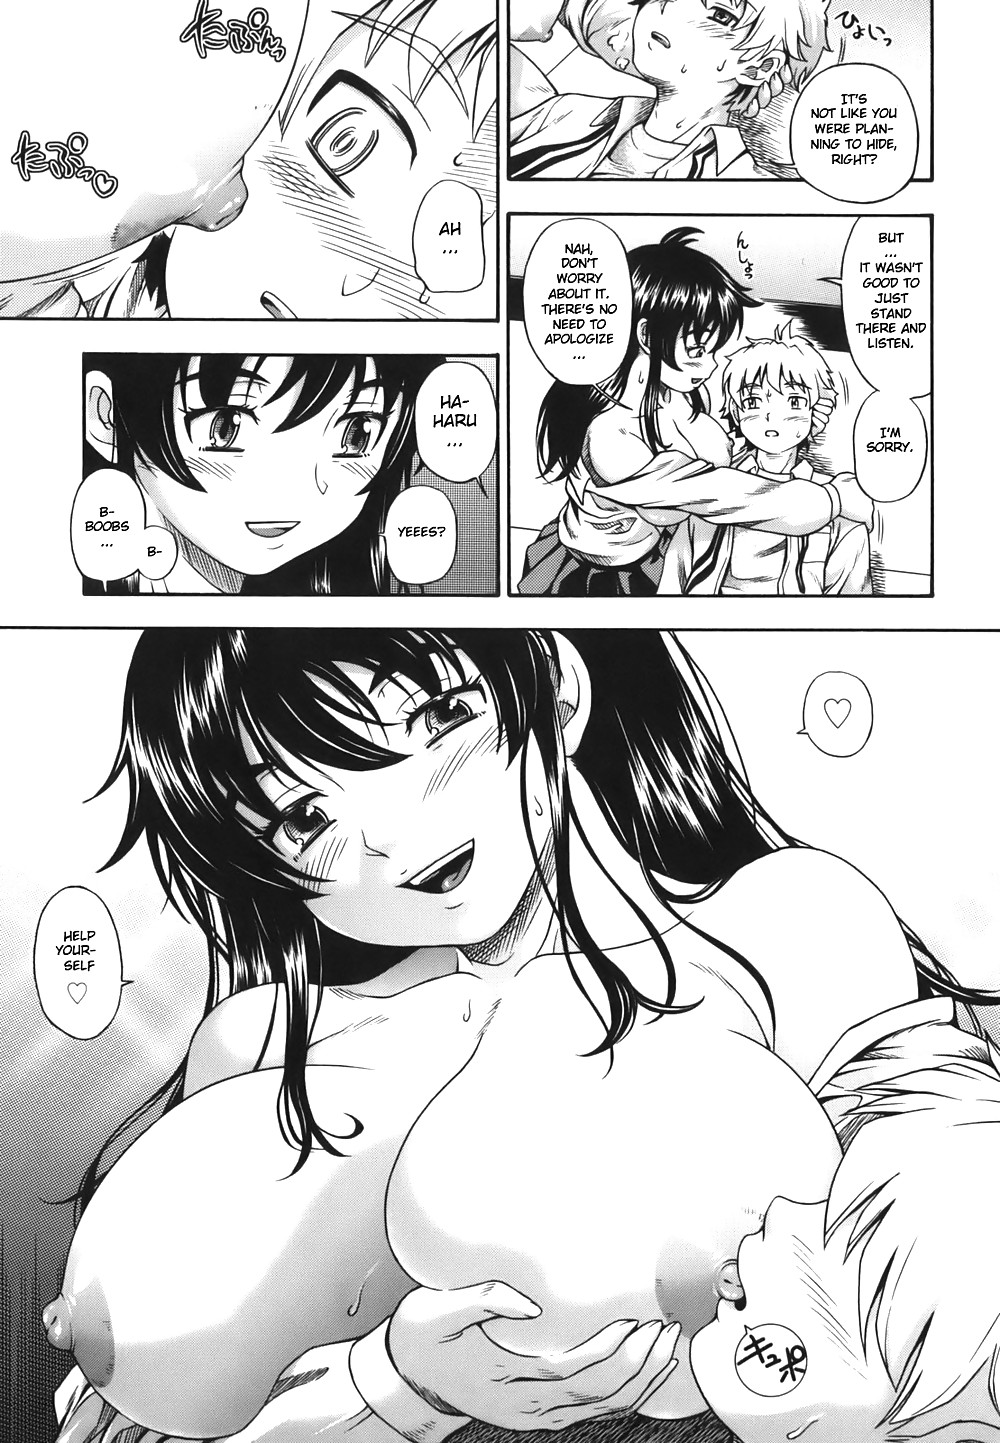 (fumetto hentai) fukudada opere erotiche #1
 #21012173